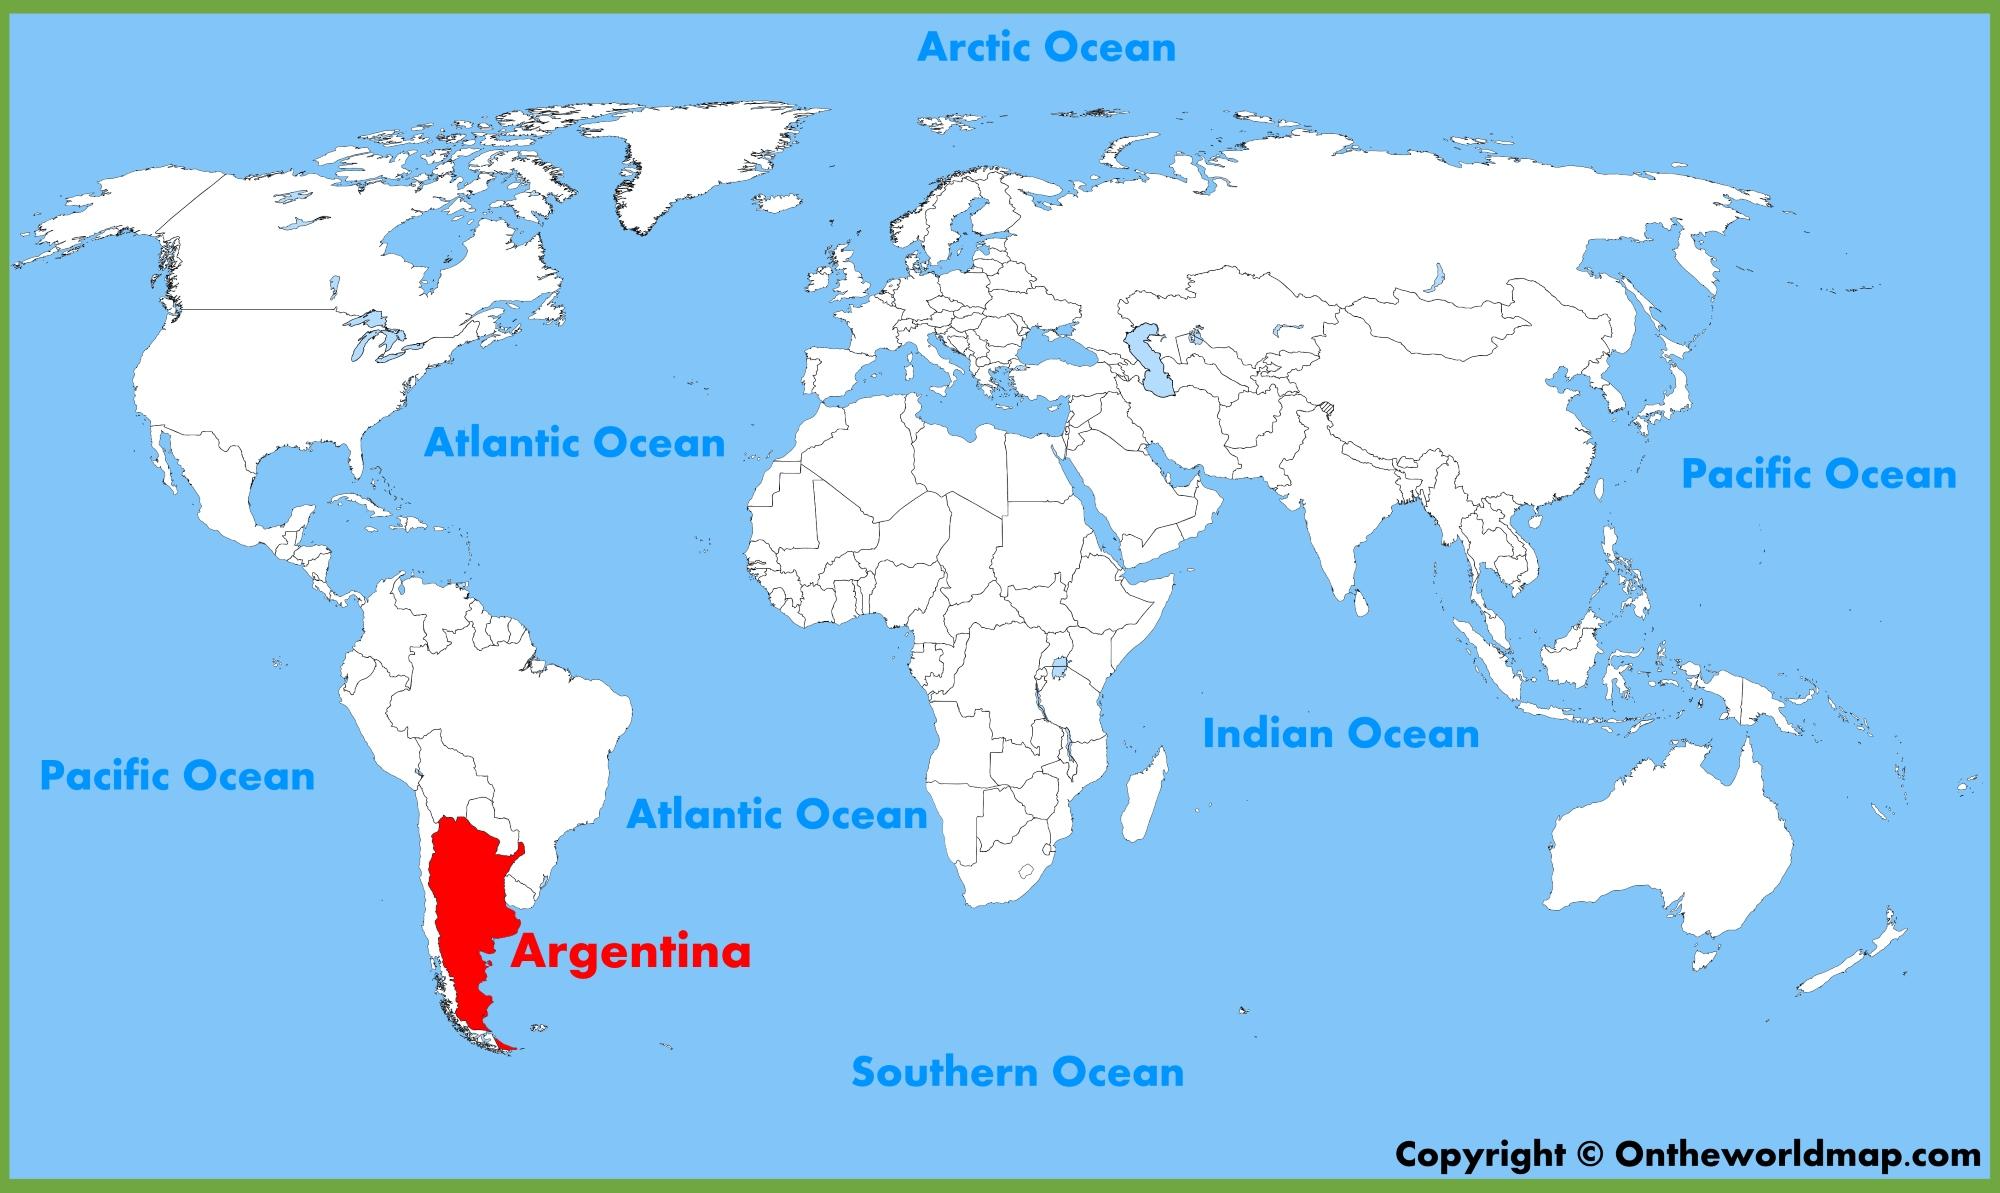 کشور آرژانتین را بیشتر بشناسیم